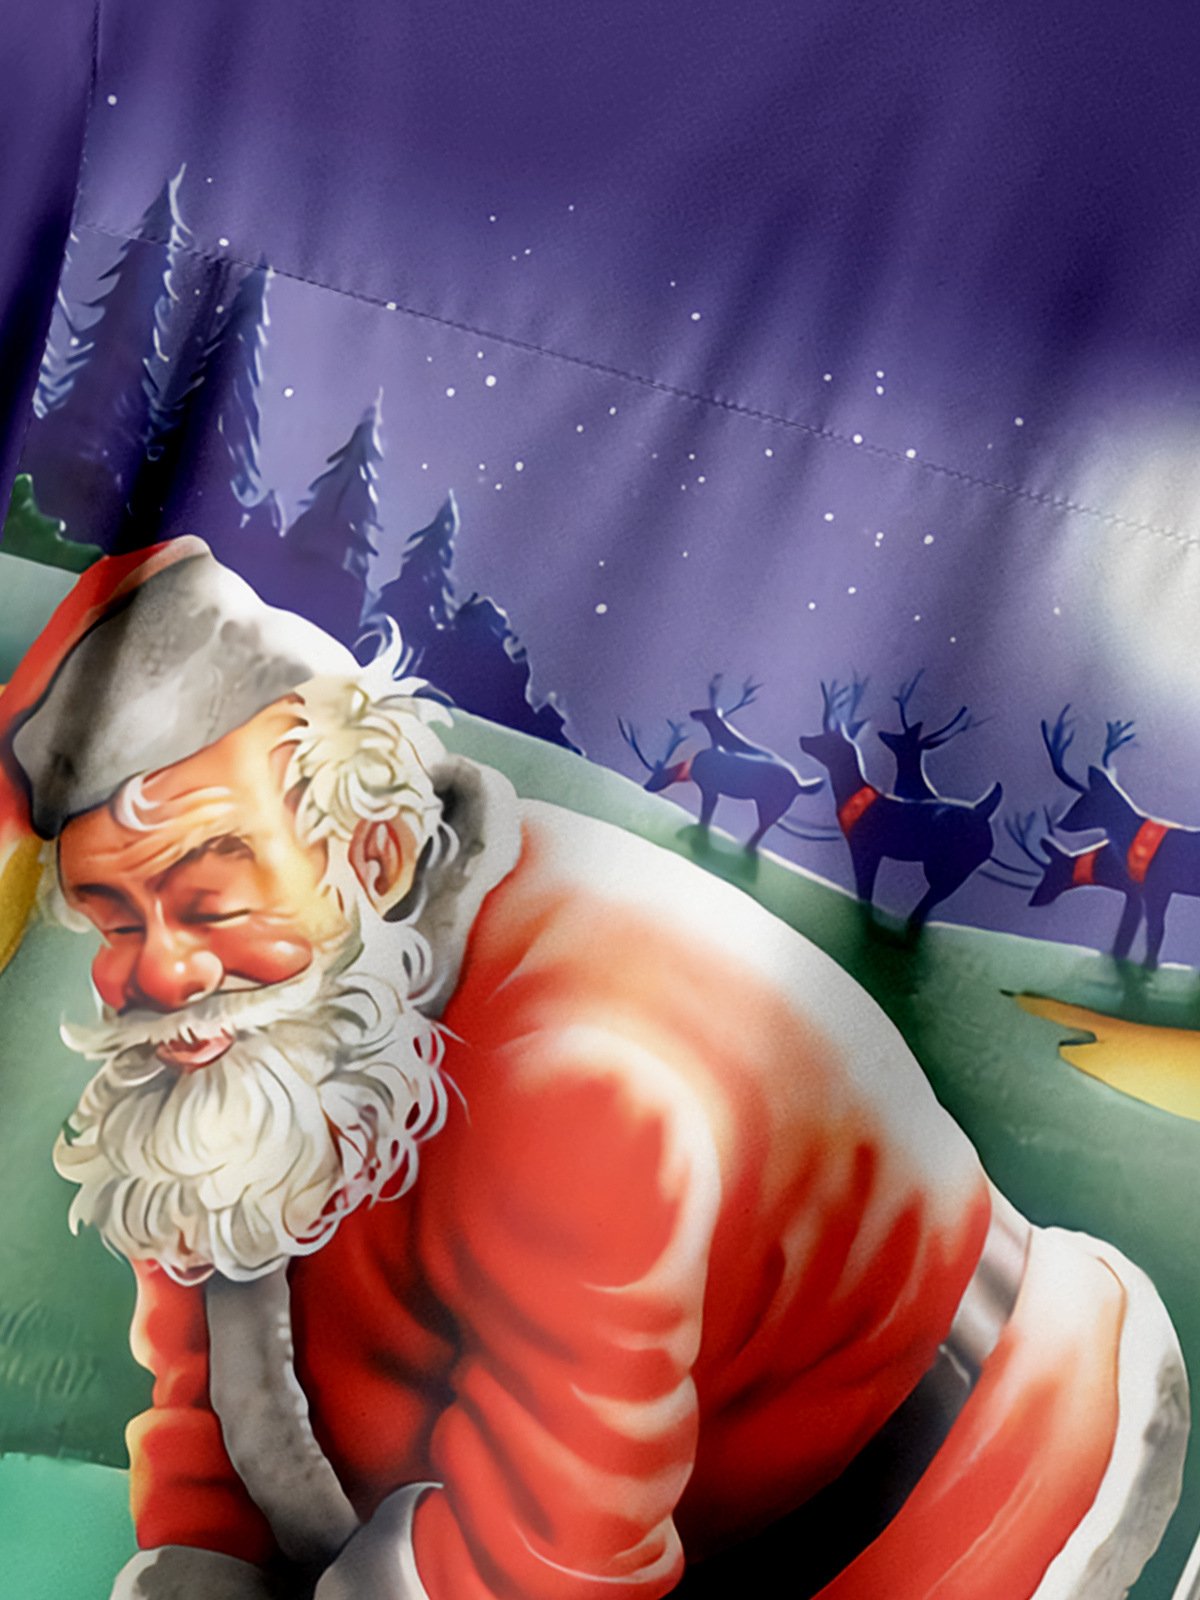 Golf Weihnachtsmann Brusttasche Kurzarm Urlaub Bluse